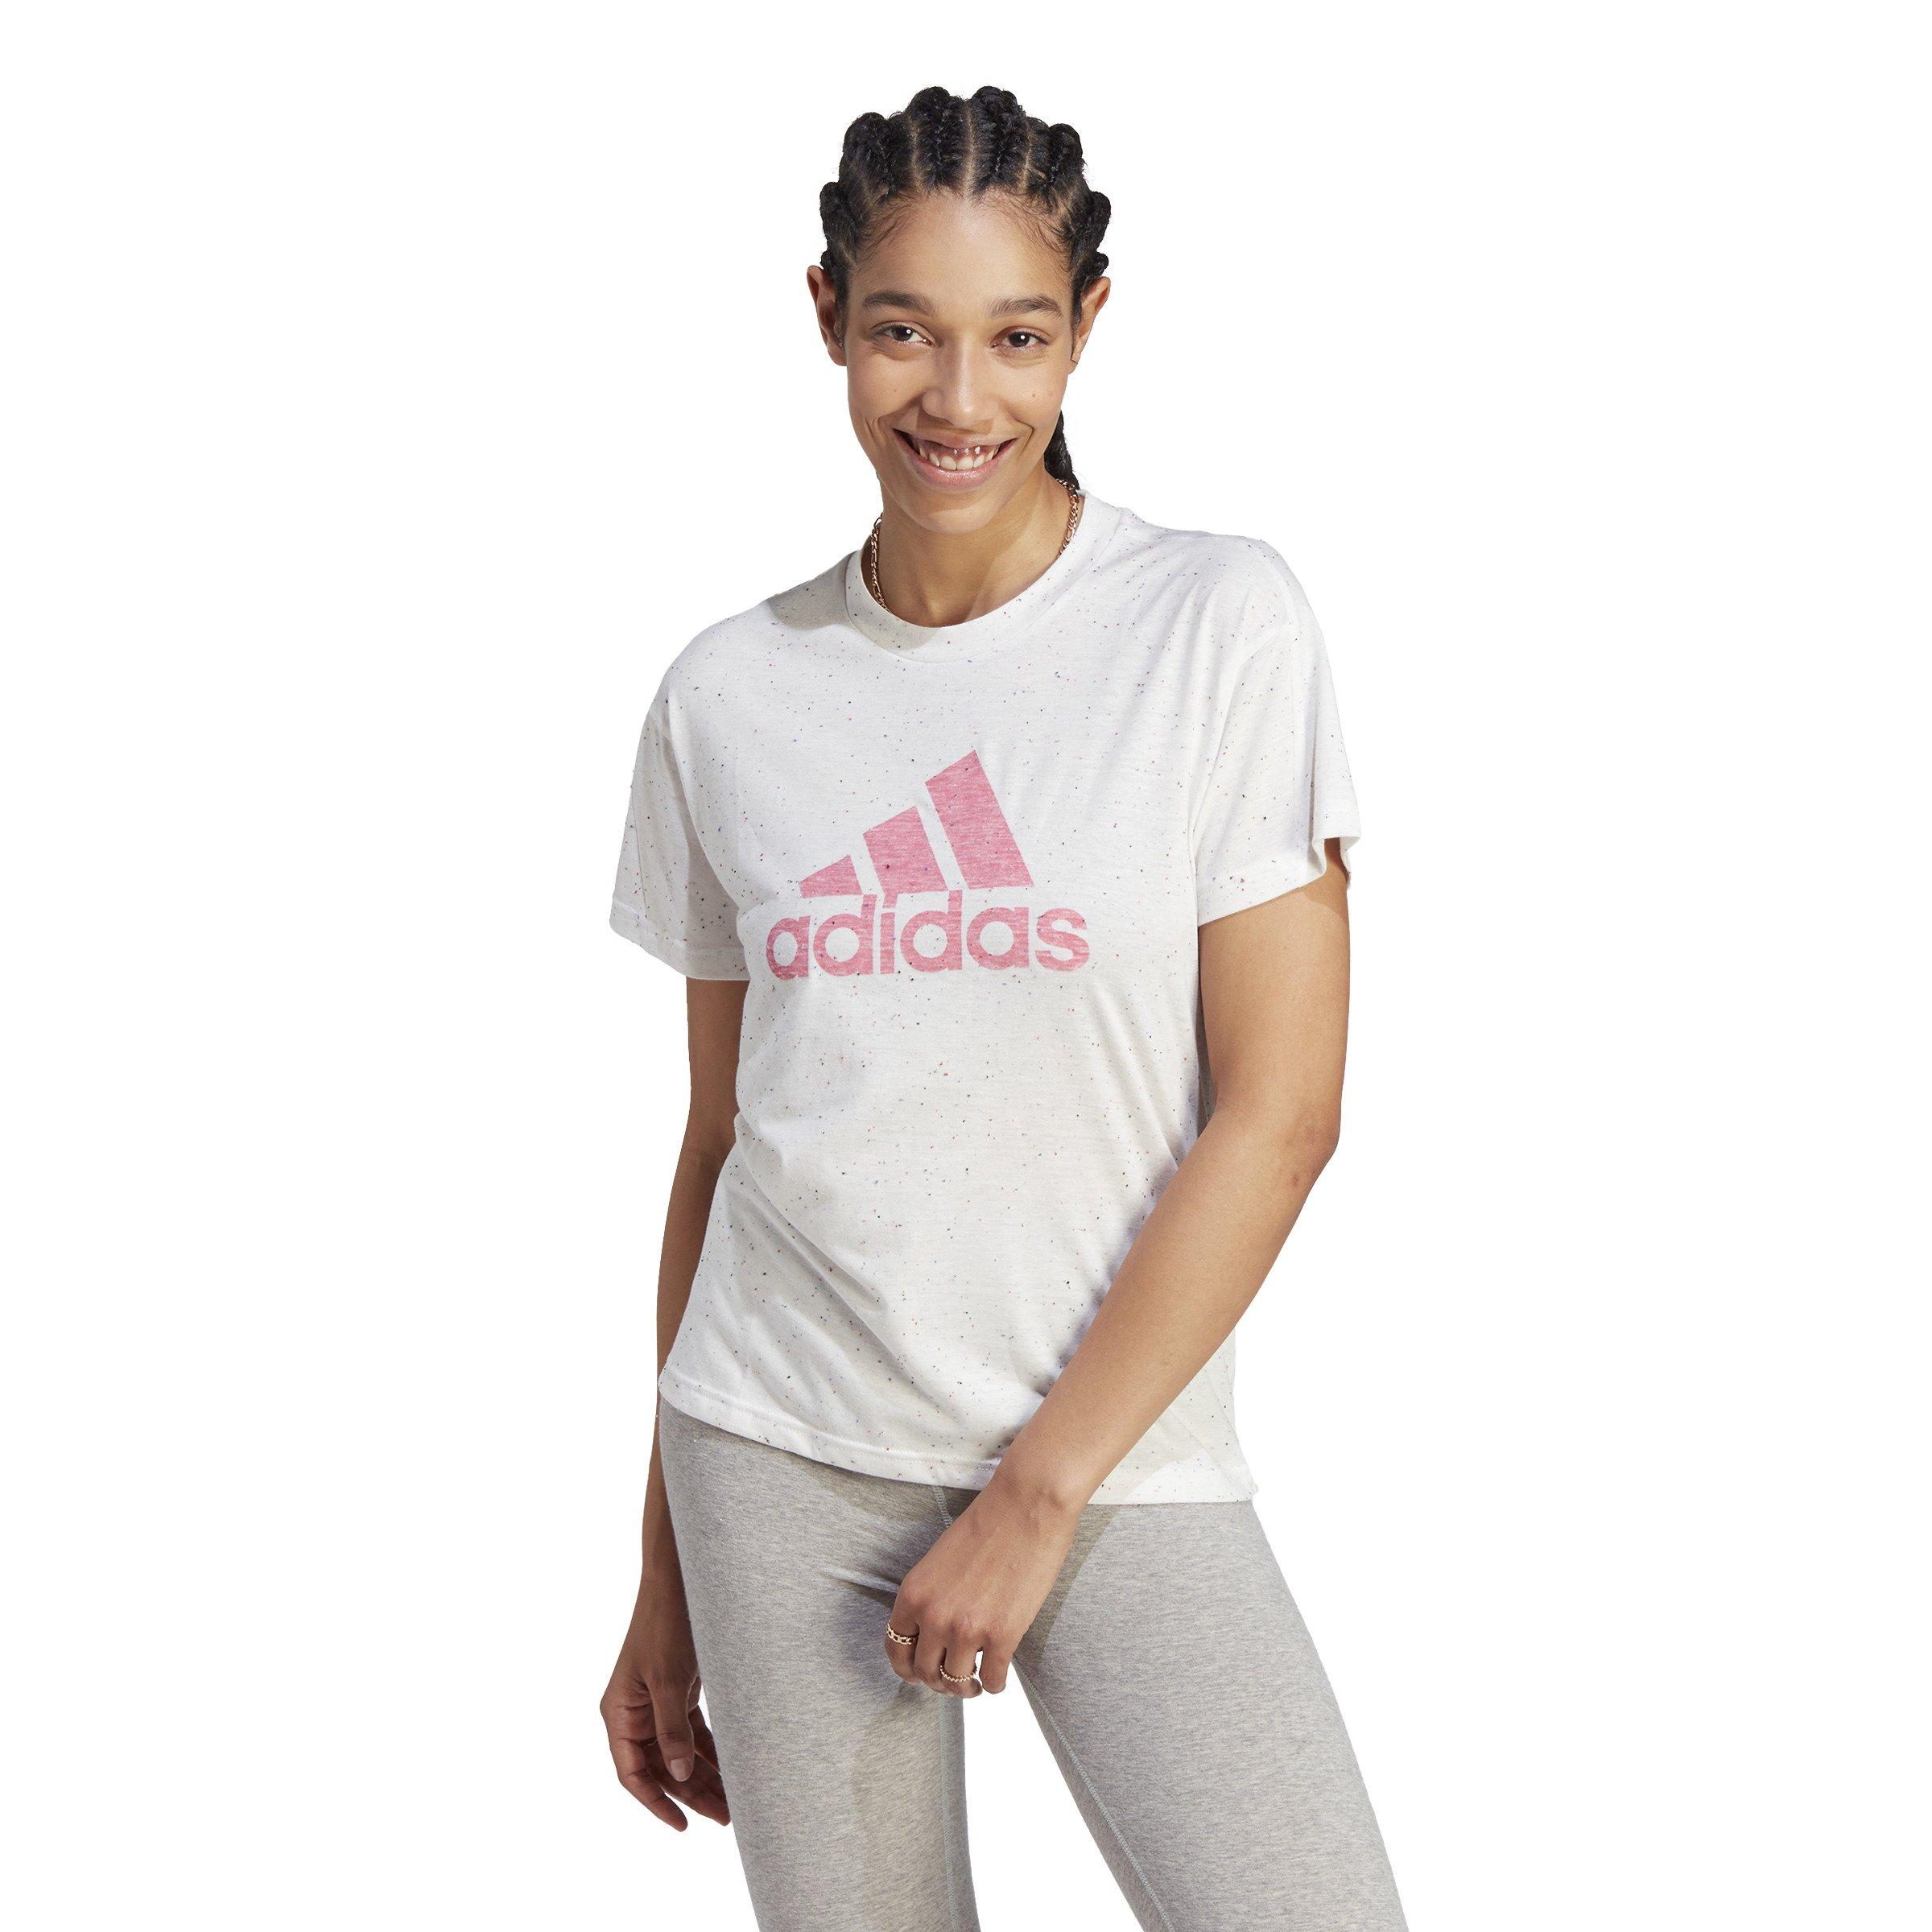 adidas Women\'s Future Icons T-Shirt White - Winners